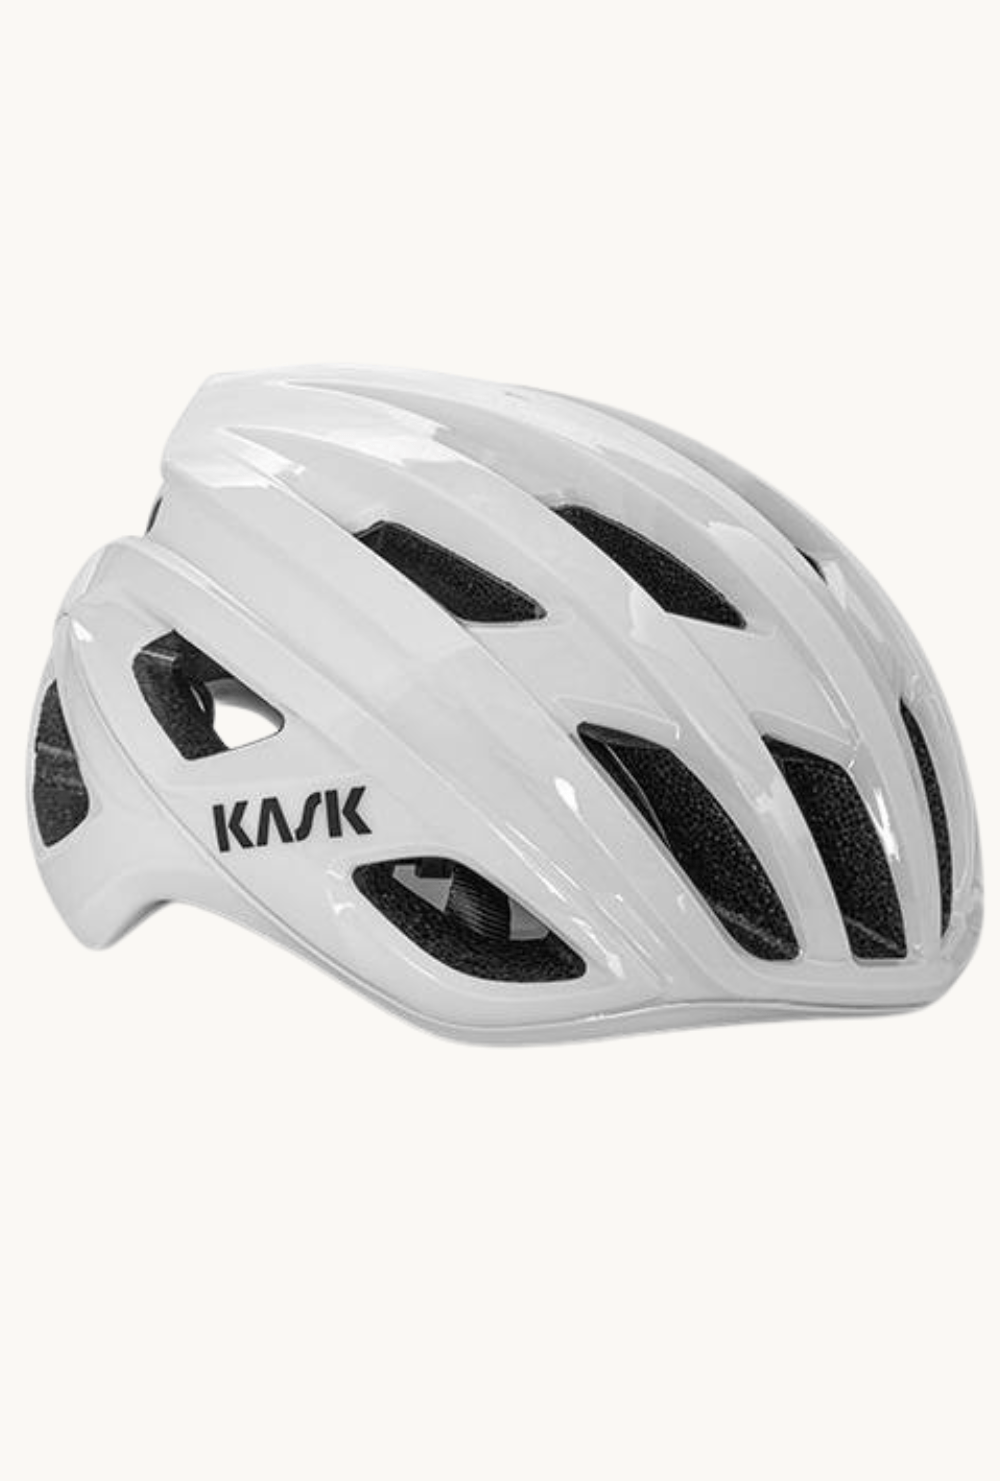 Helmet - Kask Mojito Whitesmall / White